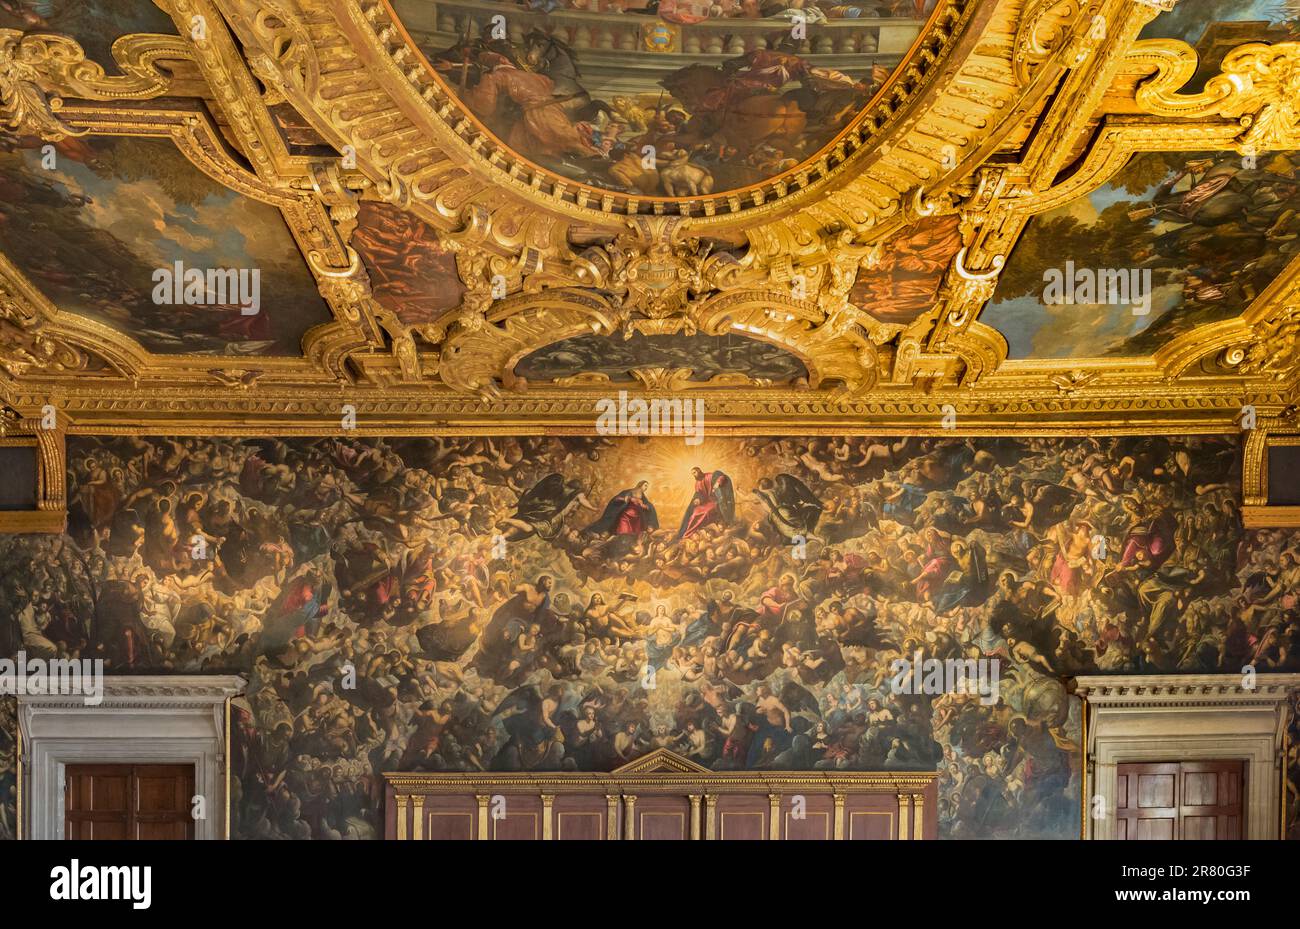 Venedig, Italien. Il Paradiso oder Paradise. Ölgemälde von Tintoretto in der Kammer des Großen Rates im Palazzo Ducale oder Dogenpalast. Die Stockfoto